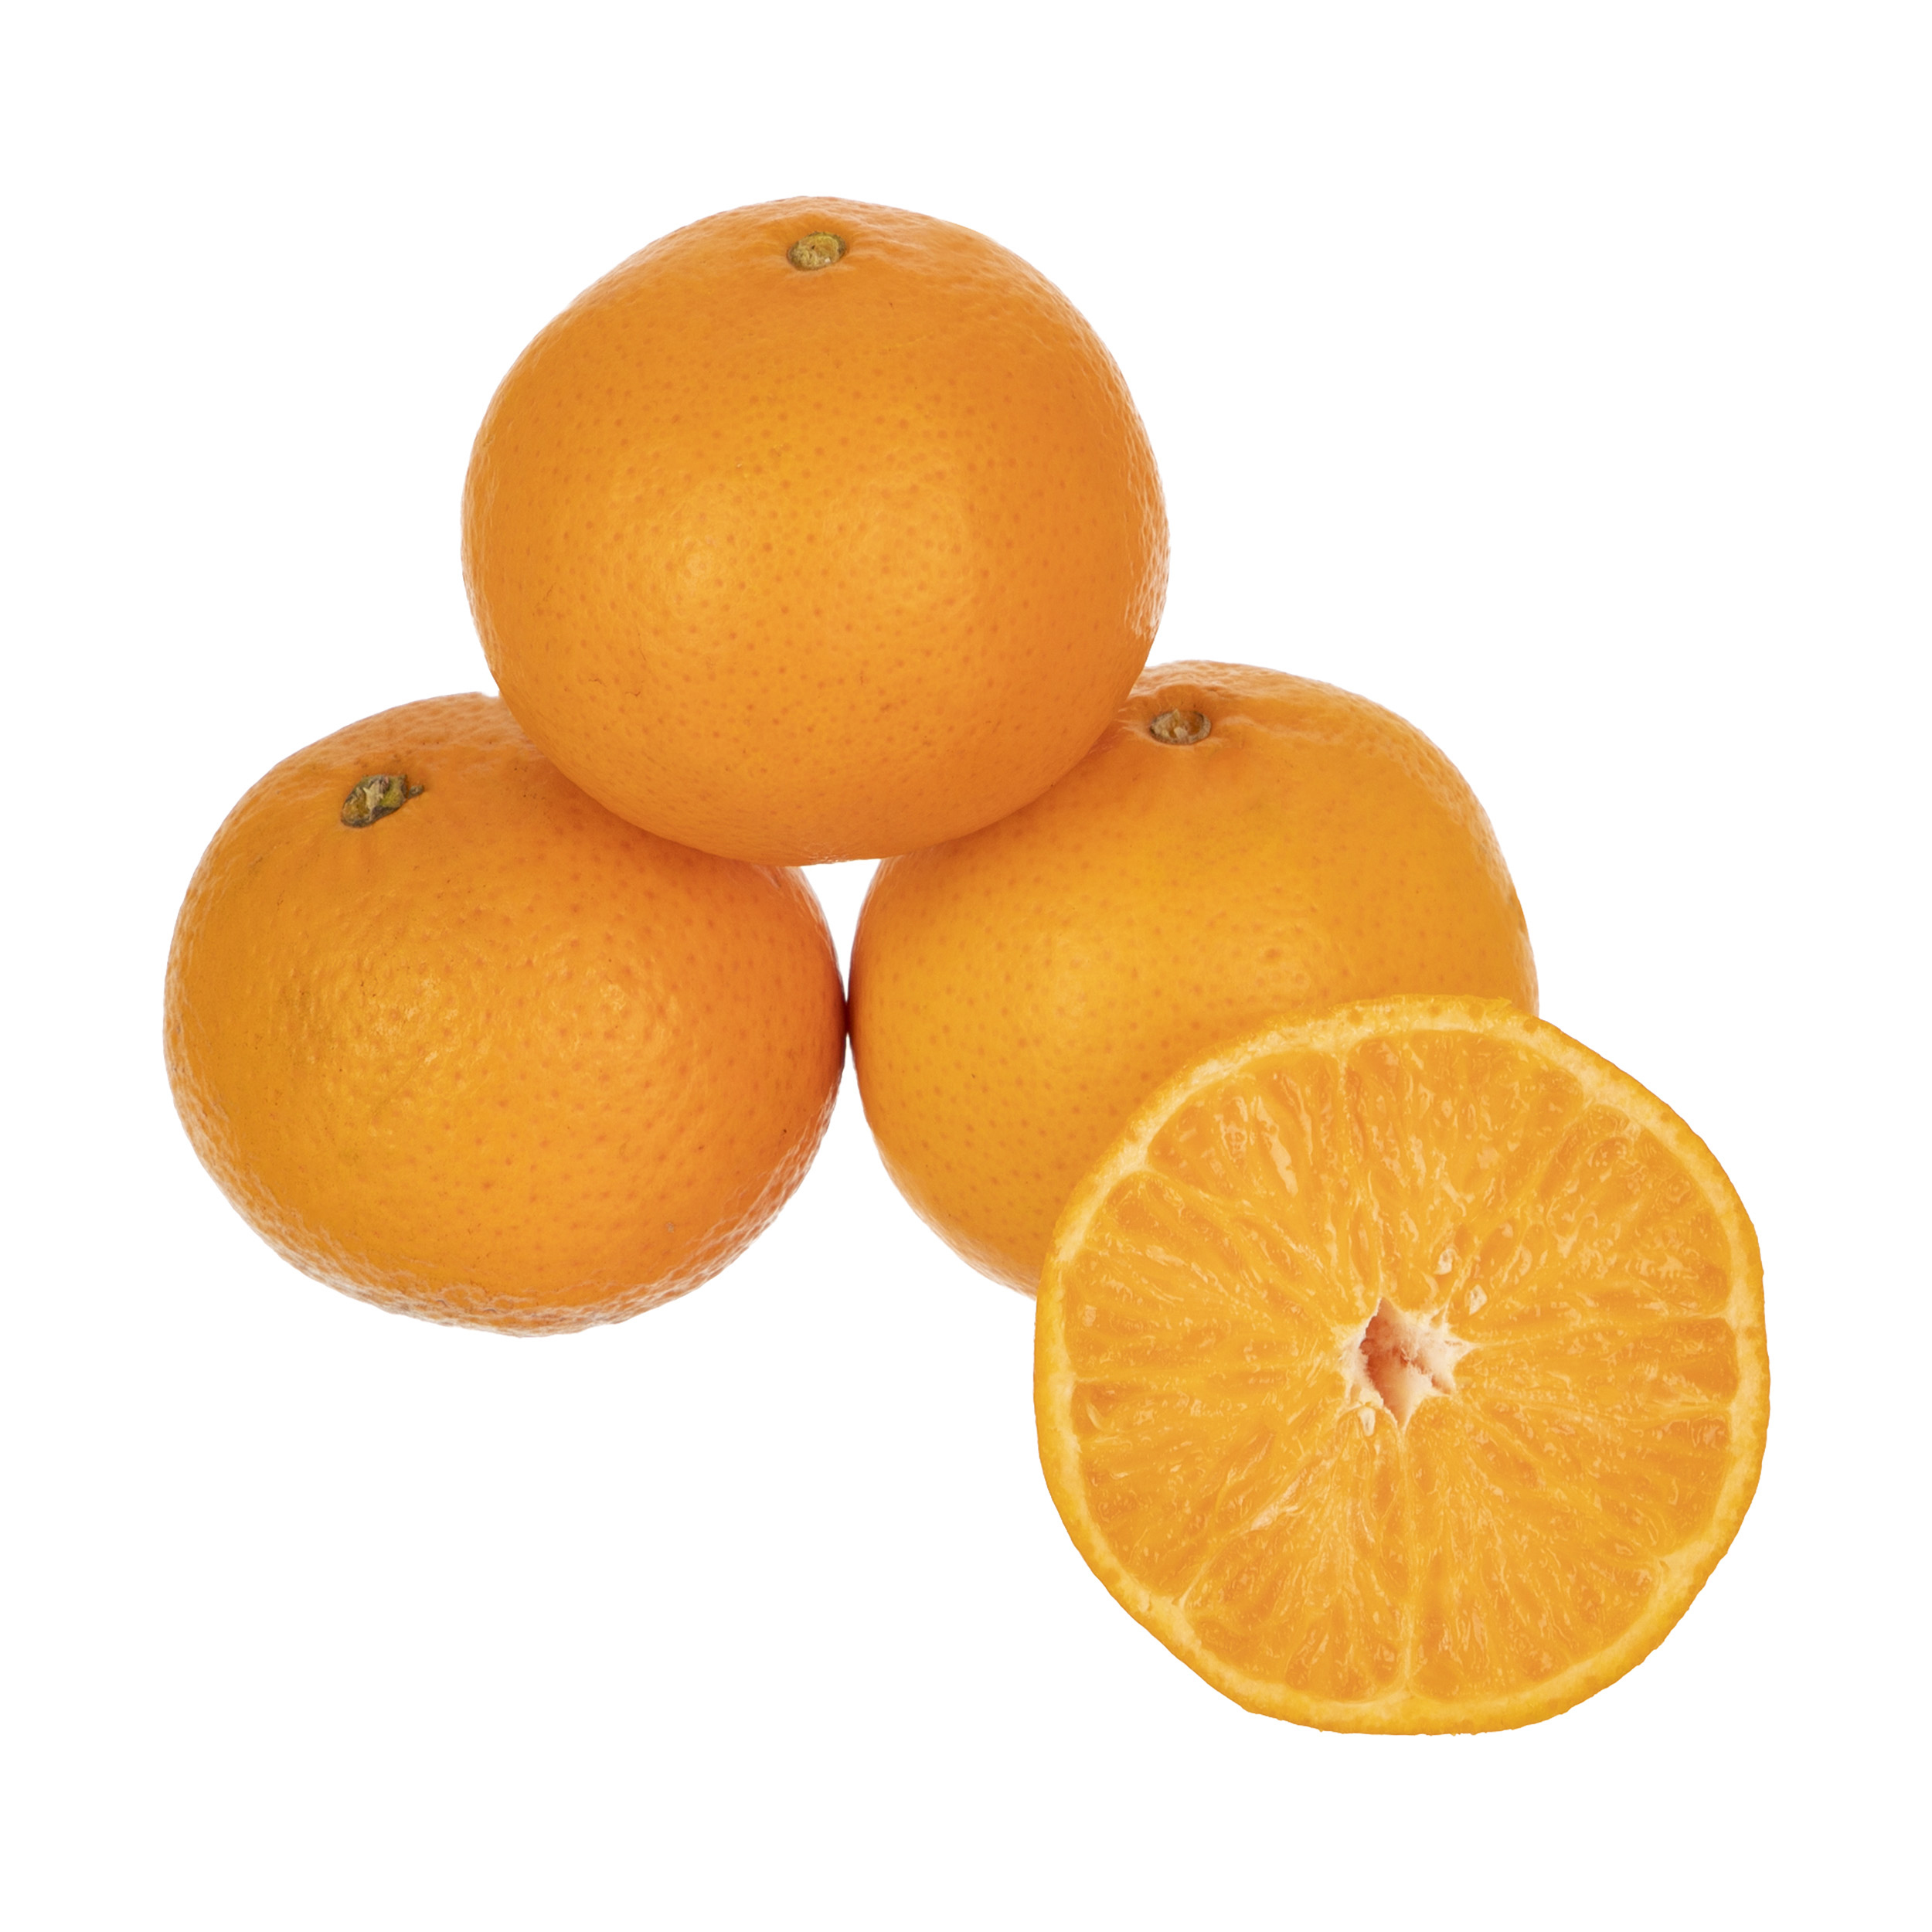 نارنگی ارگانیک رضوانی - 1 کیلوگرم